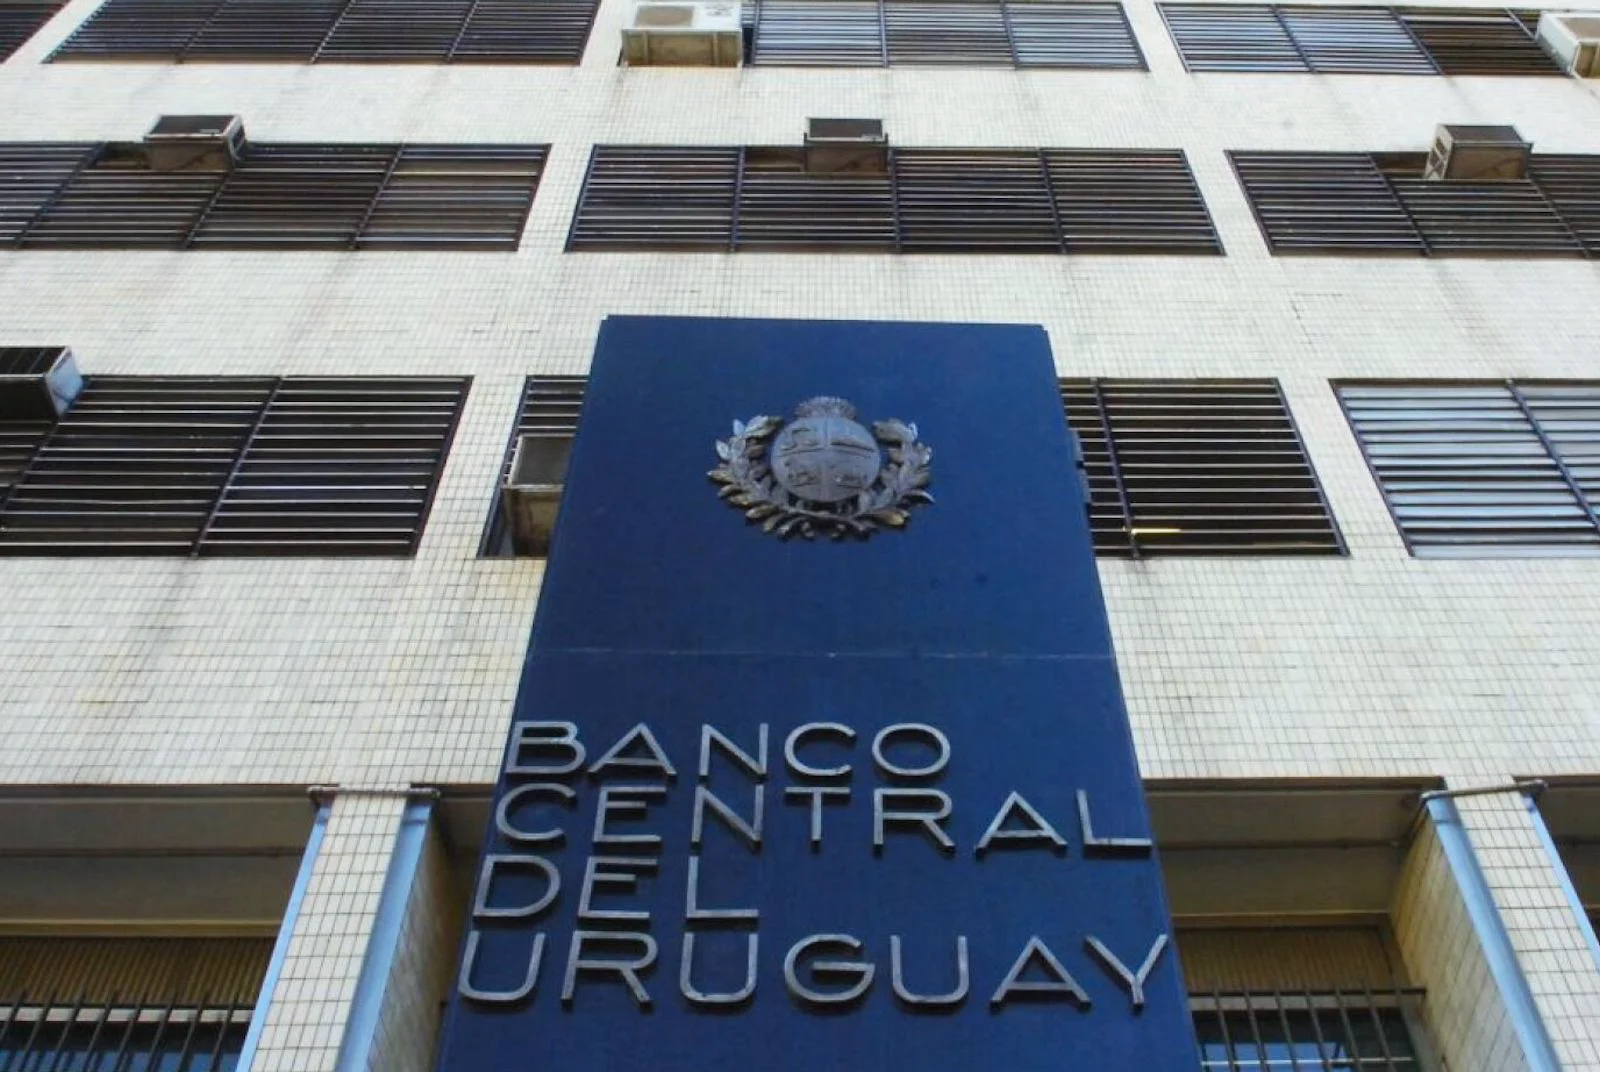 El Banco Central de Uruguay solicita información sobre Martín Insaurralde y Jésica Cirio